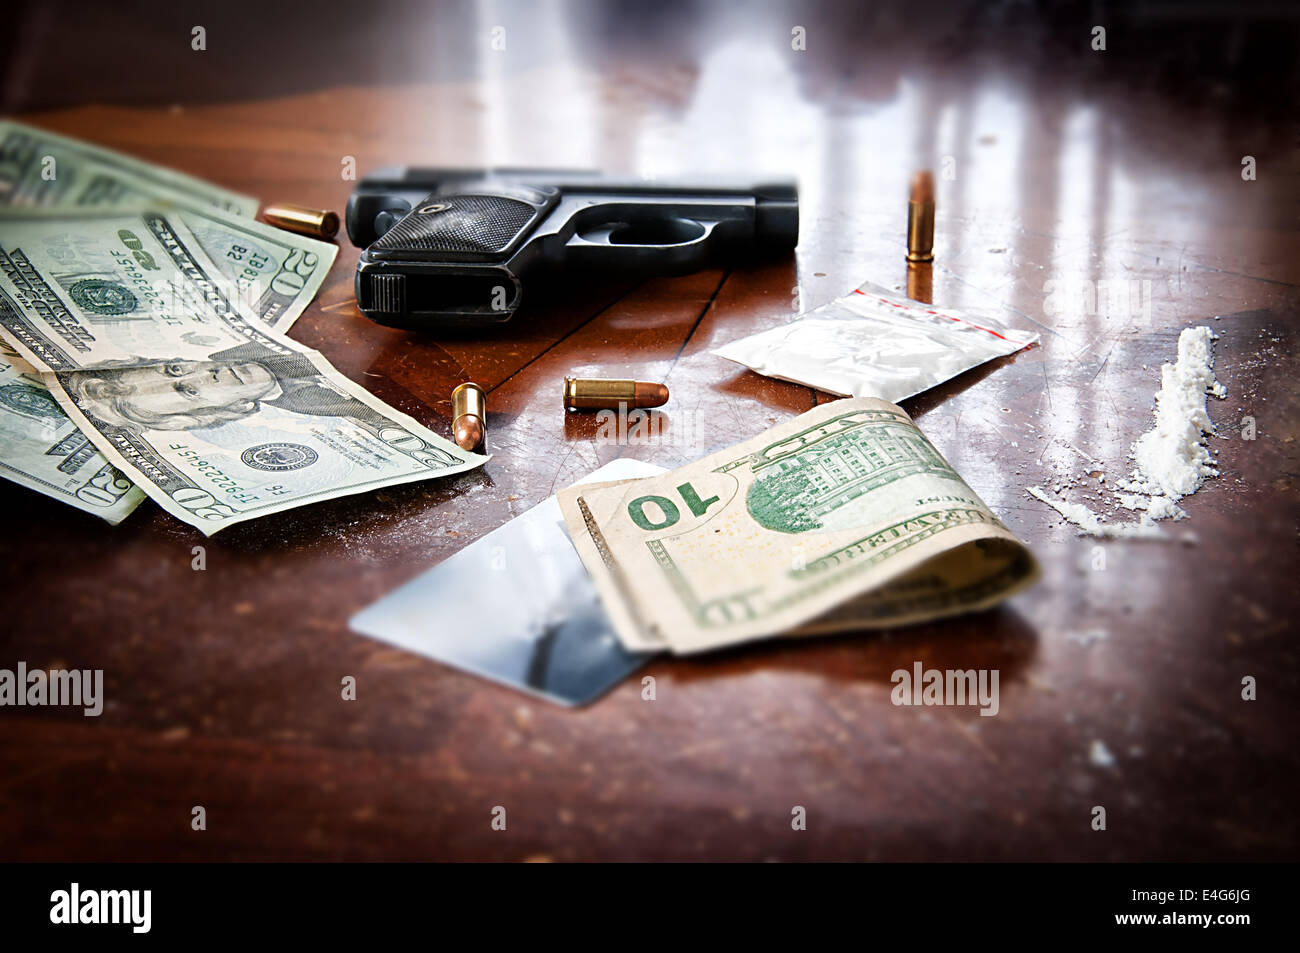 La cocaina, pistola e un sacco di soldi americani per rappresentare una droga illegale transazione Foto Stock